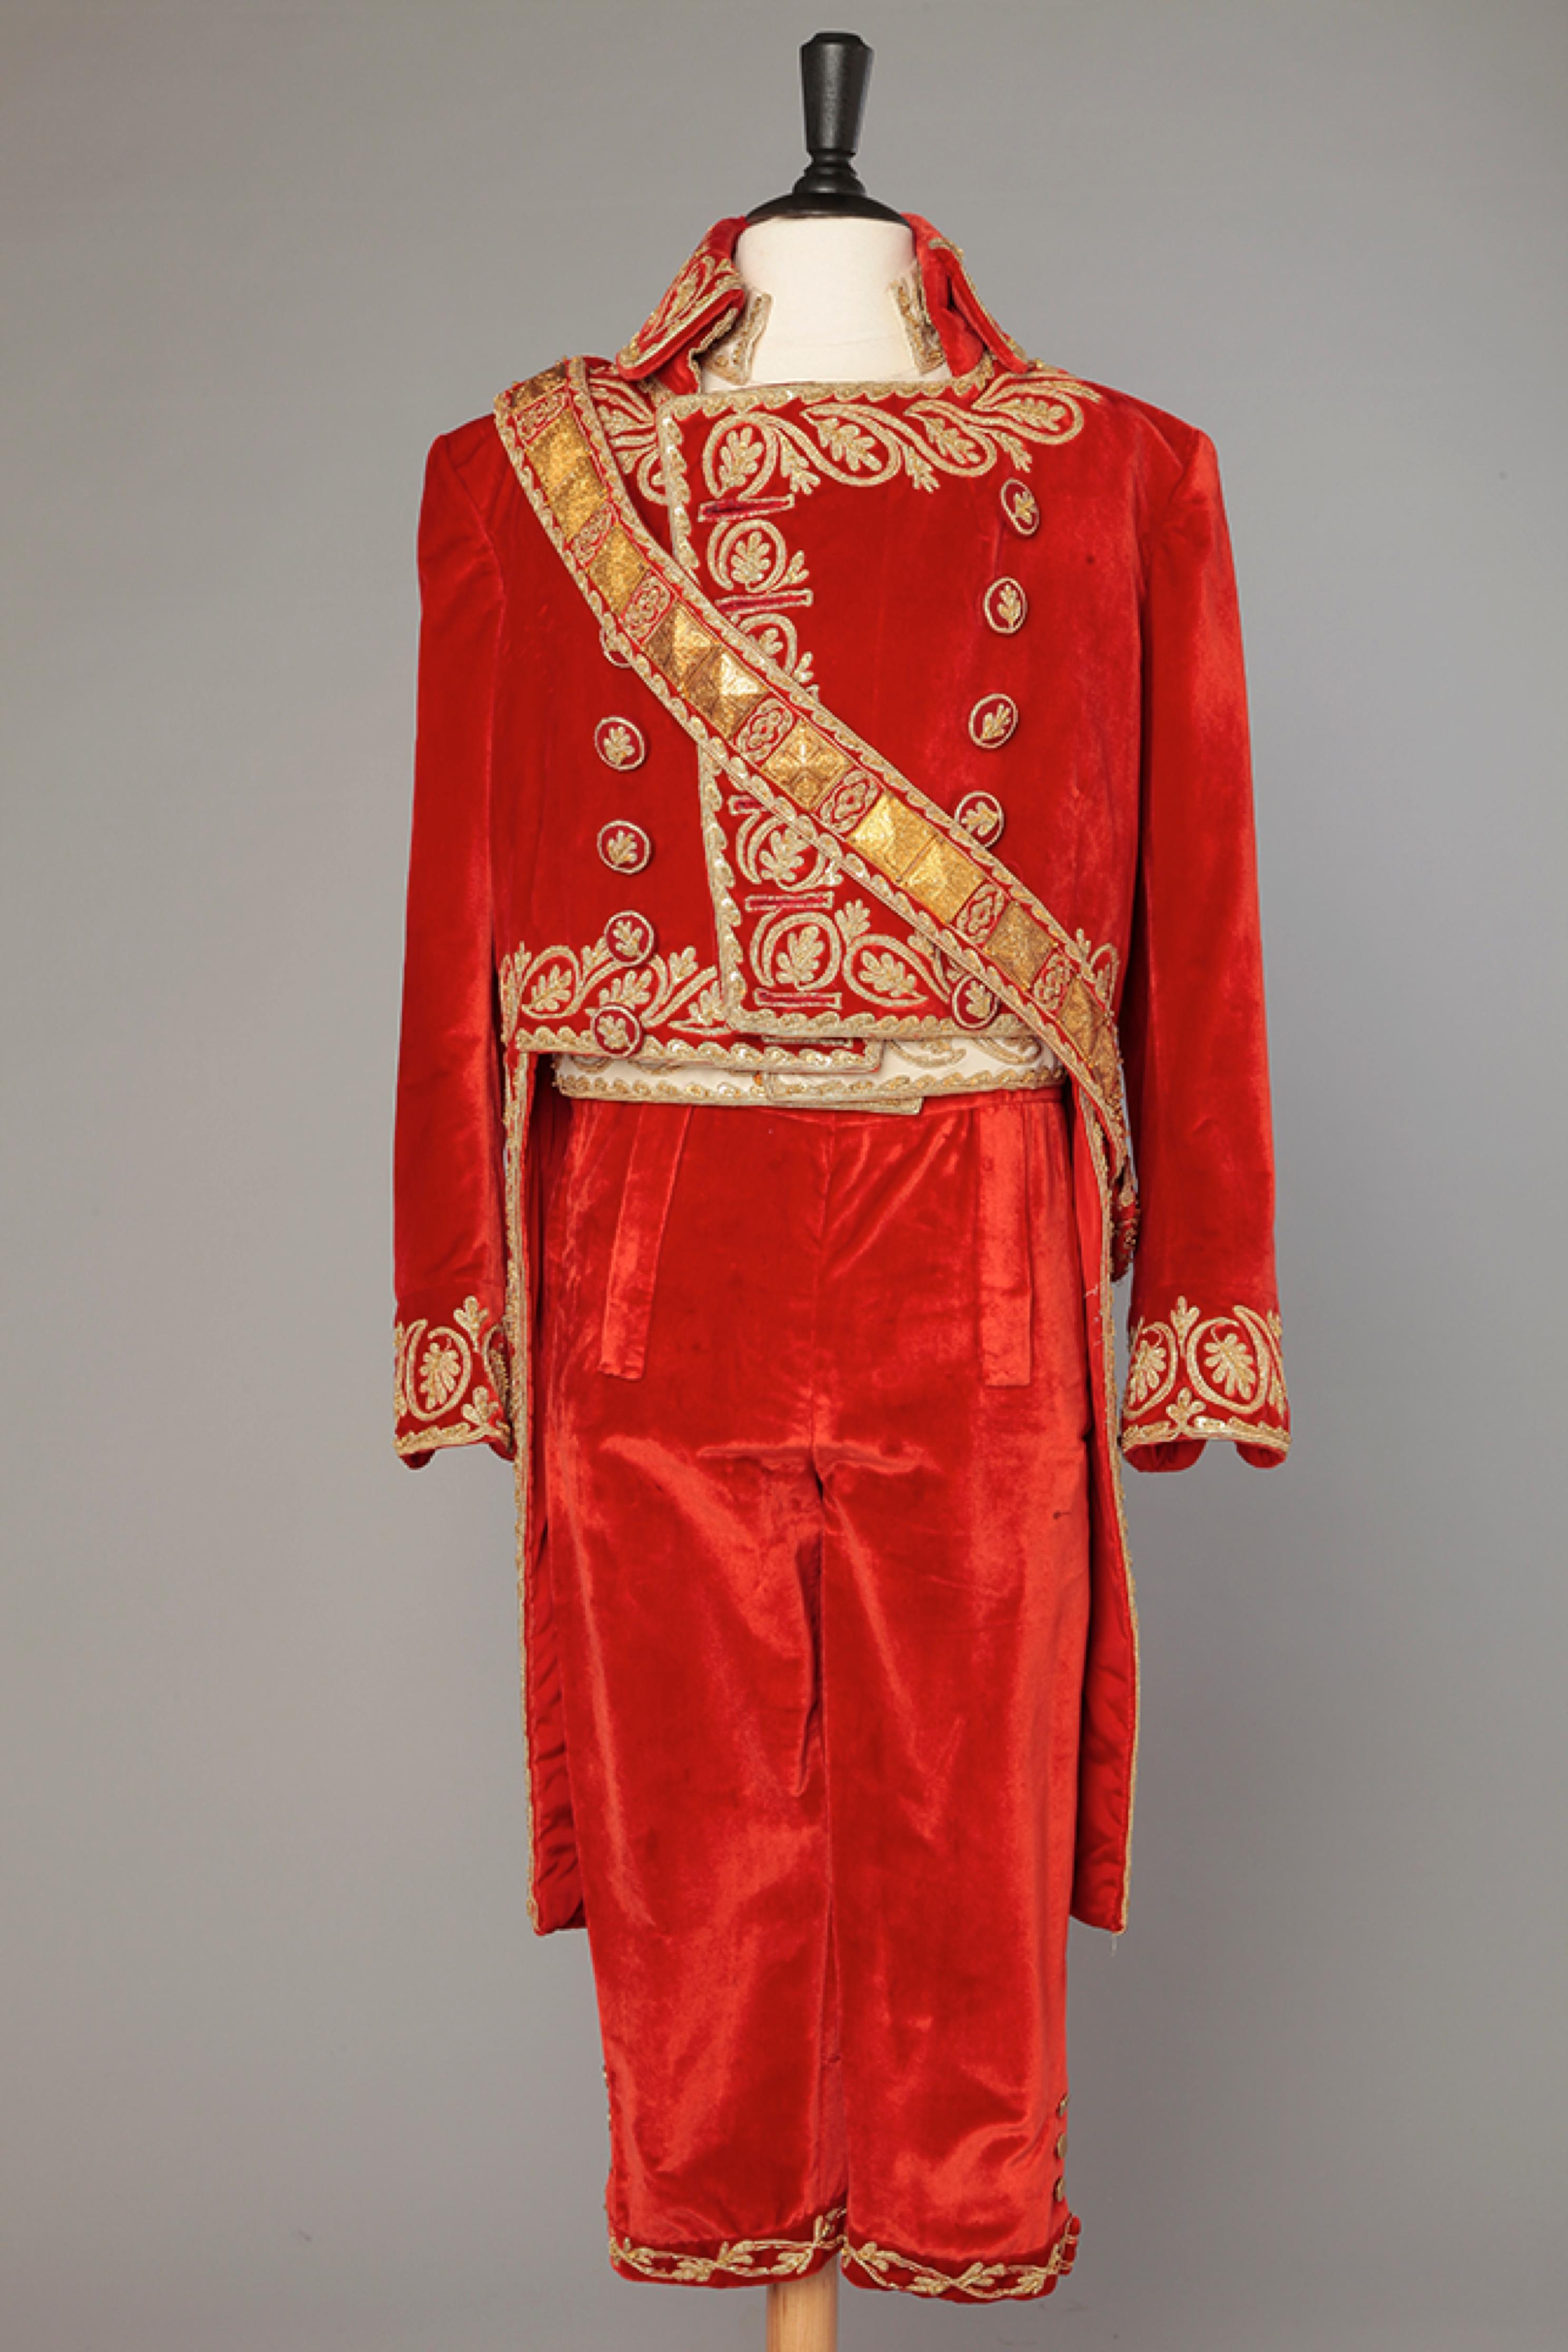 Men's Napoleon's  costume from the movie 